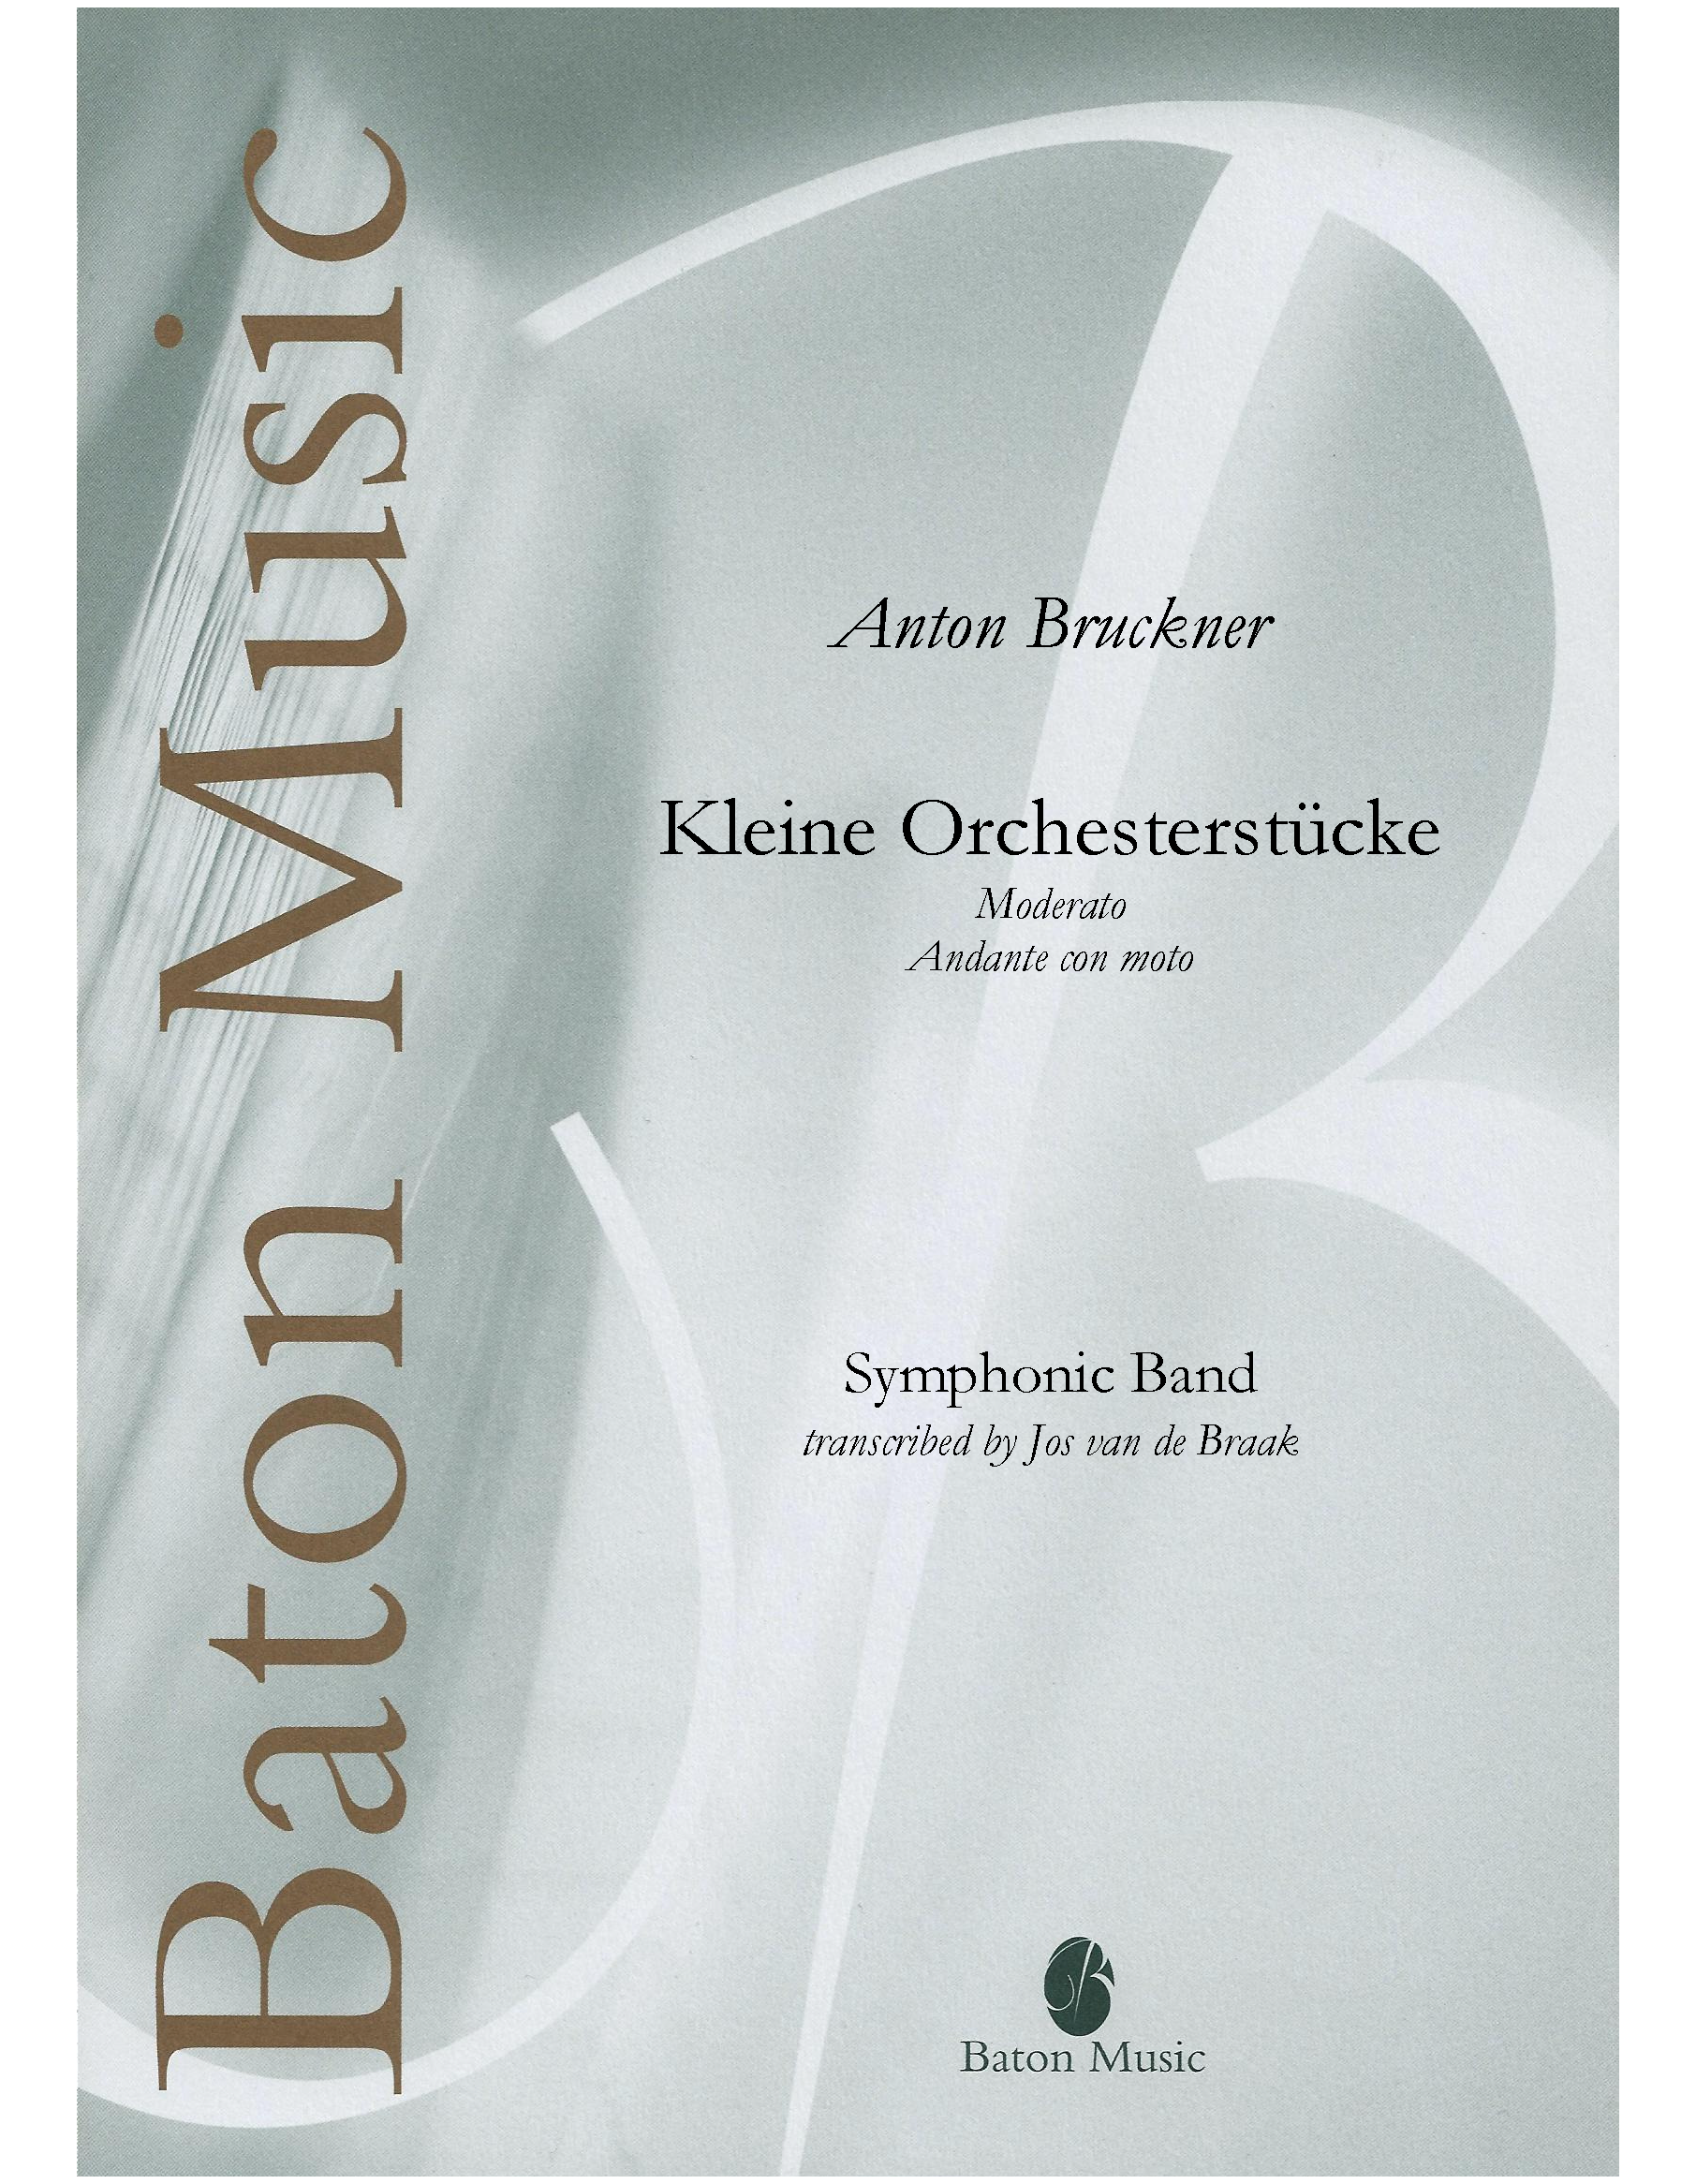 Kleine Orchesterstucke. モデラートとアンダンテ・コン・モート：アントン・ブルックナー / ジョス・ヴァン・デ・ブラーク [吹奏楽輸入楽譜]